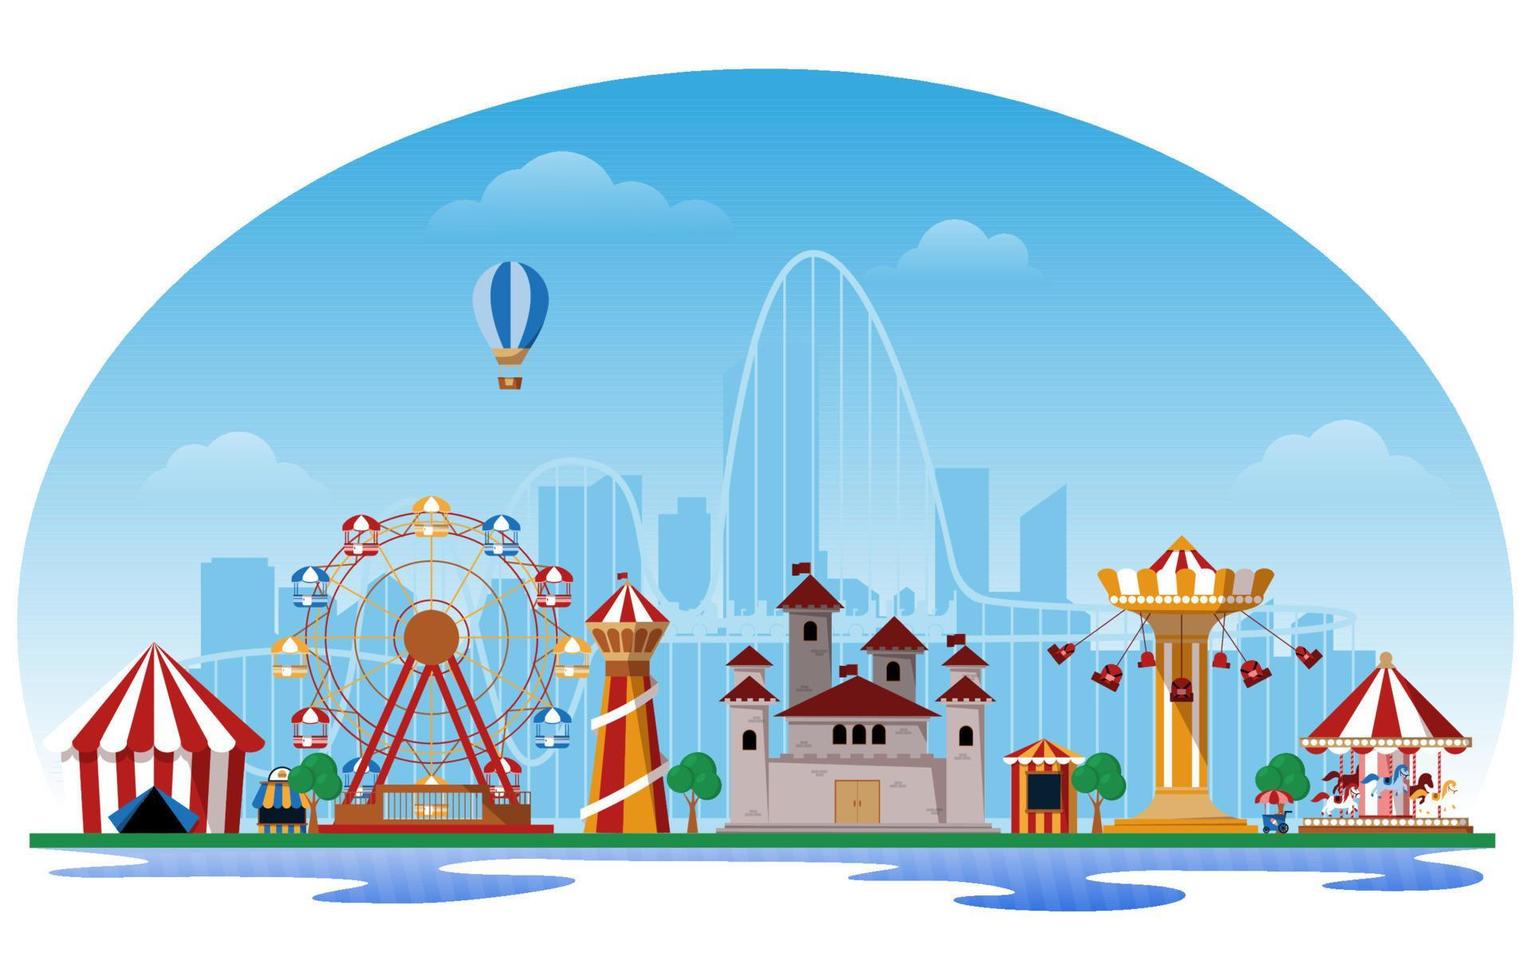 Ilustración de vector plano de carnaval de feria de diversión de parque de atracciones fluido